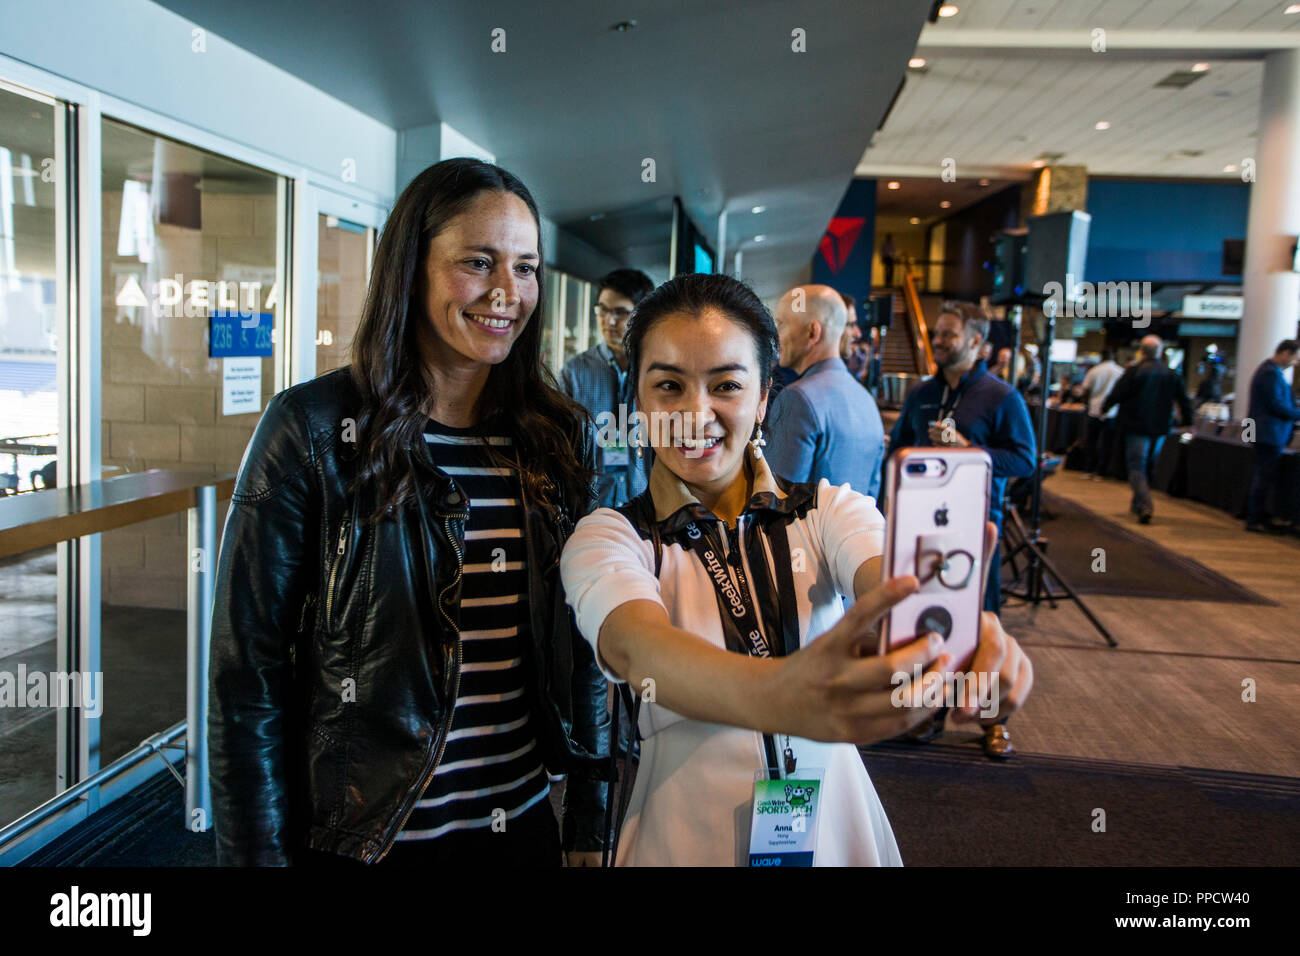 Fangirl taking selfie with female athlete, Seattle, Washington, USA Stock Photo